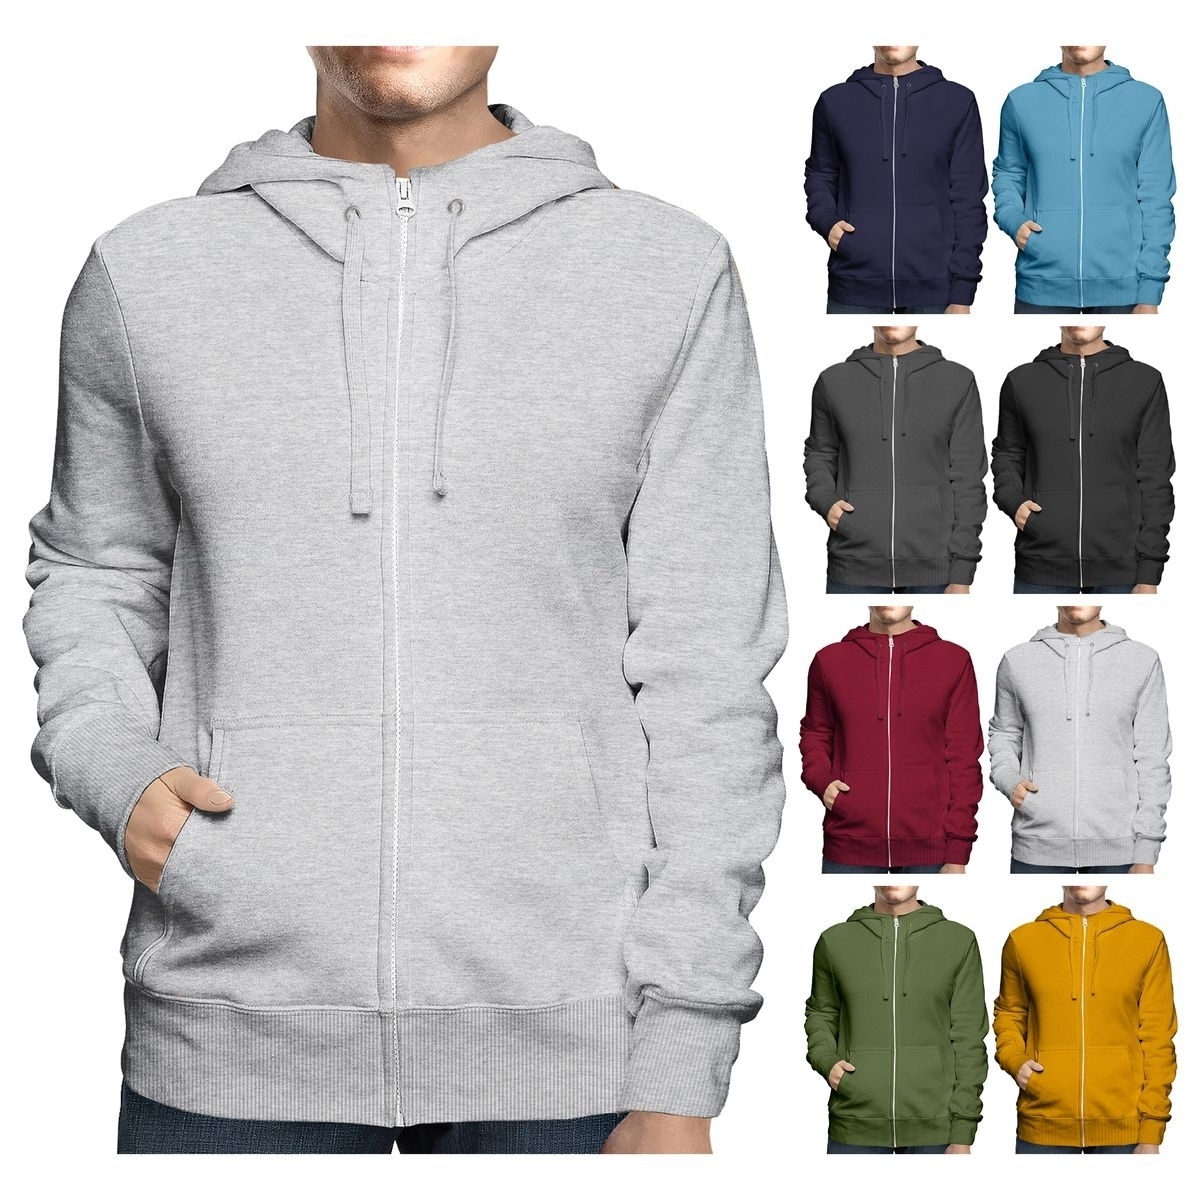 Men's Big & Tall Winter Warm Soft Cozy Full Zip-Up Fleece Lined Hoodie Sweatshirt - Red, 3X